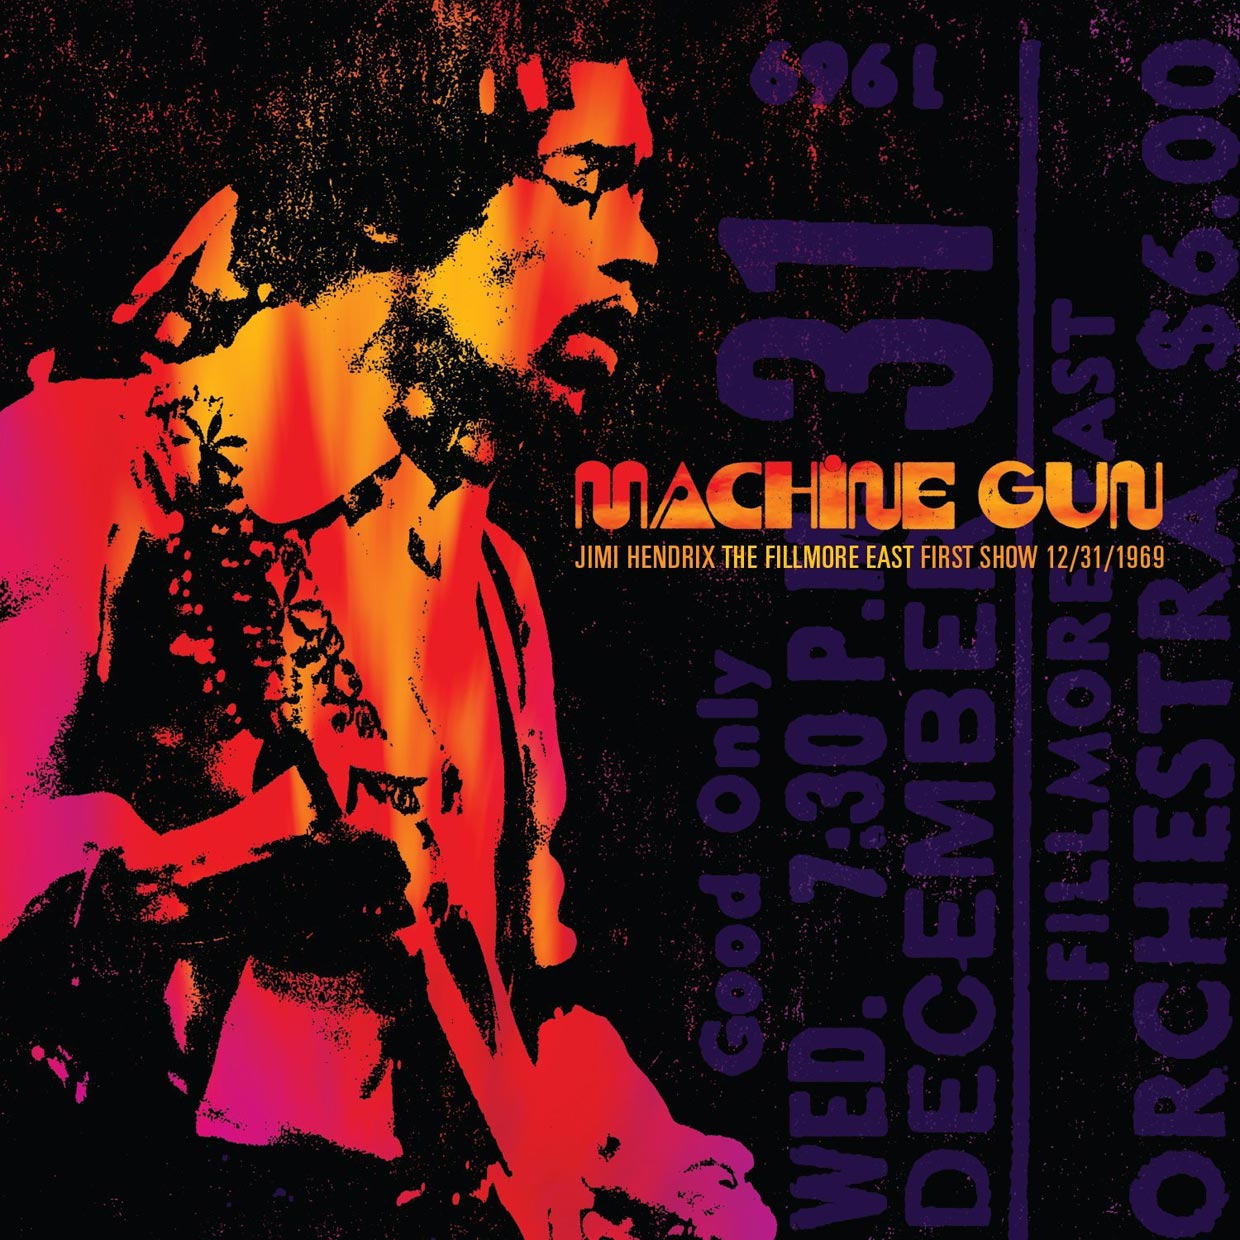 Jimi Hendrix: Machine Gun The Fillmore East First Show 12/31/1969, la  portada del disco